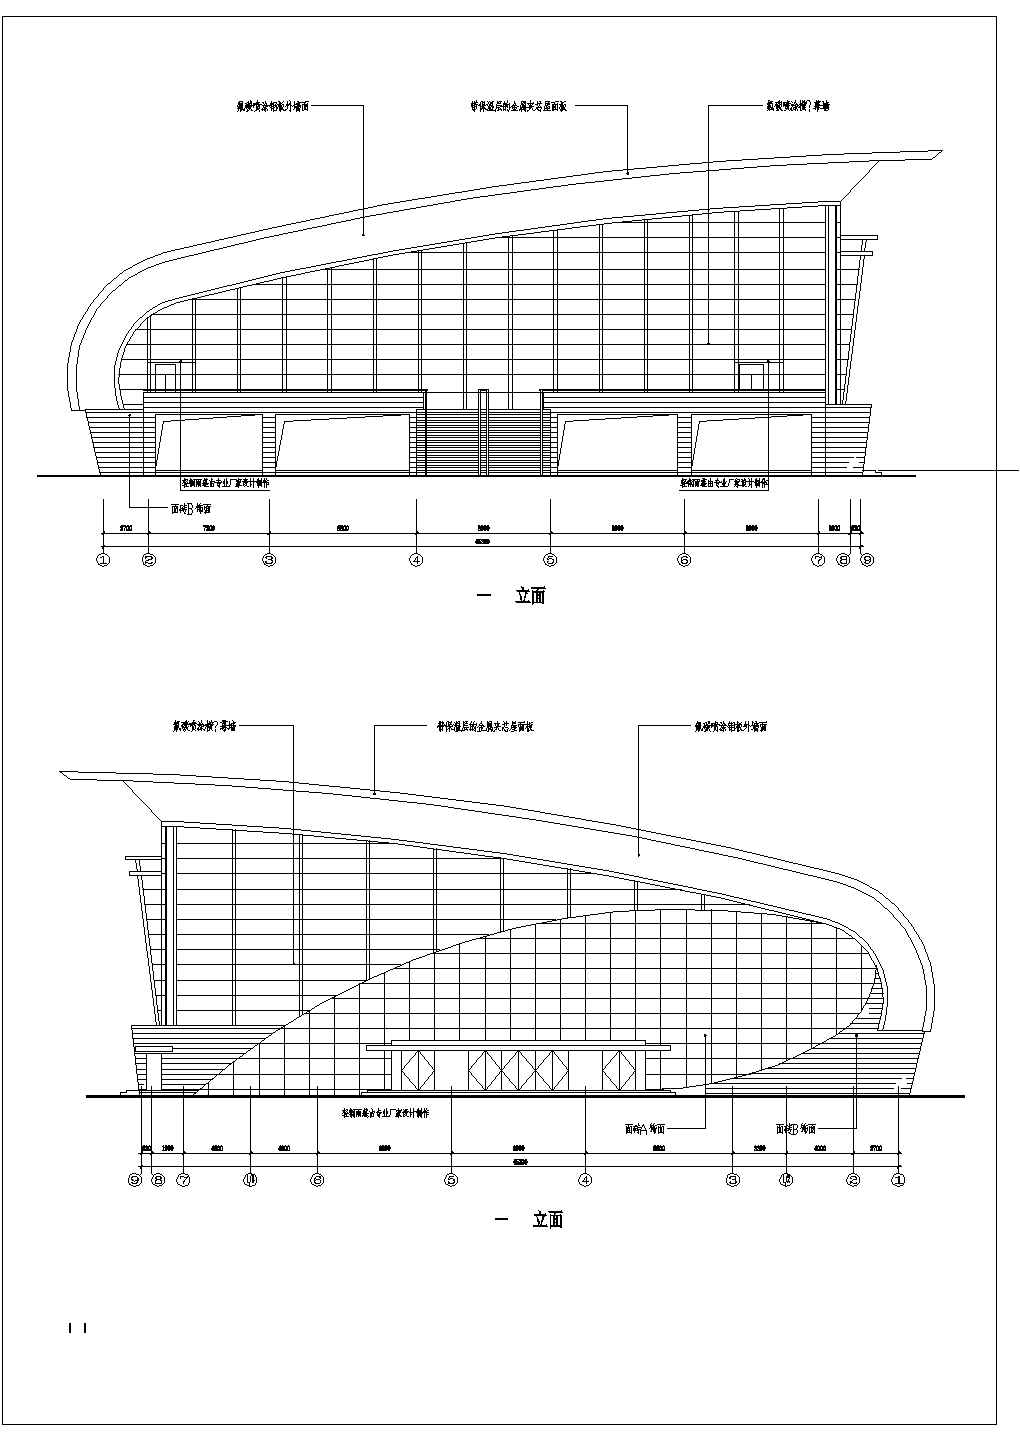 德阳市某高级中学框架结构篮球馆建筑设计方案图